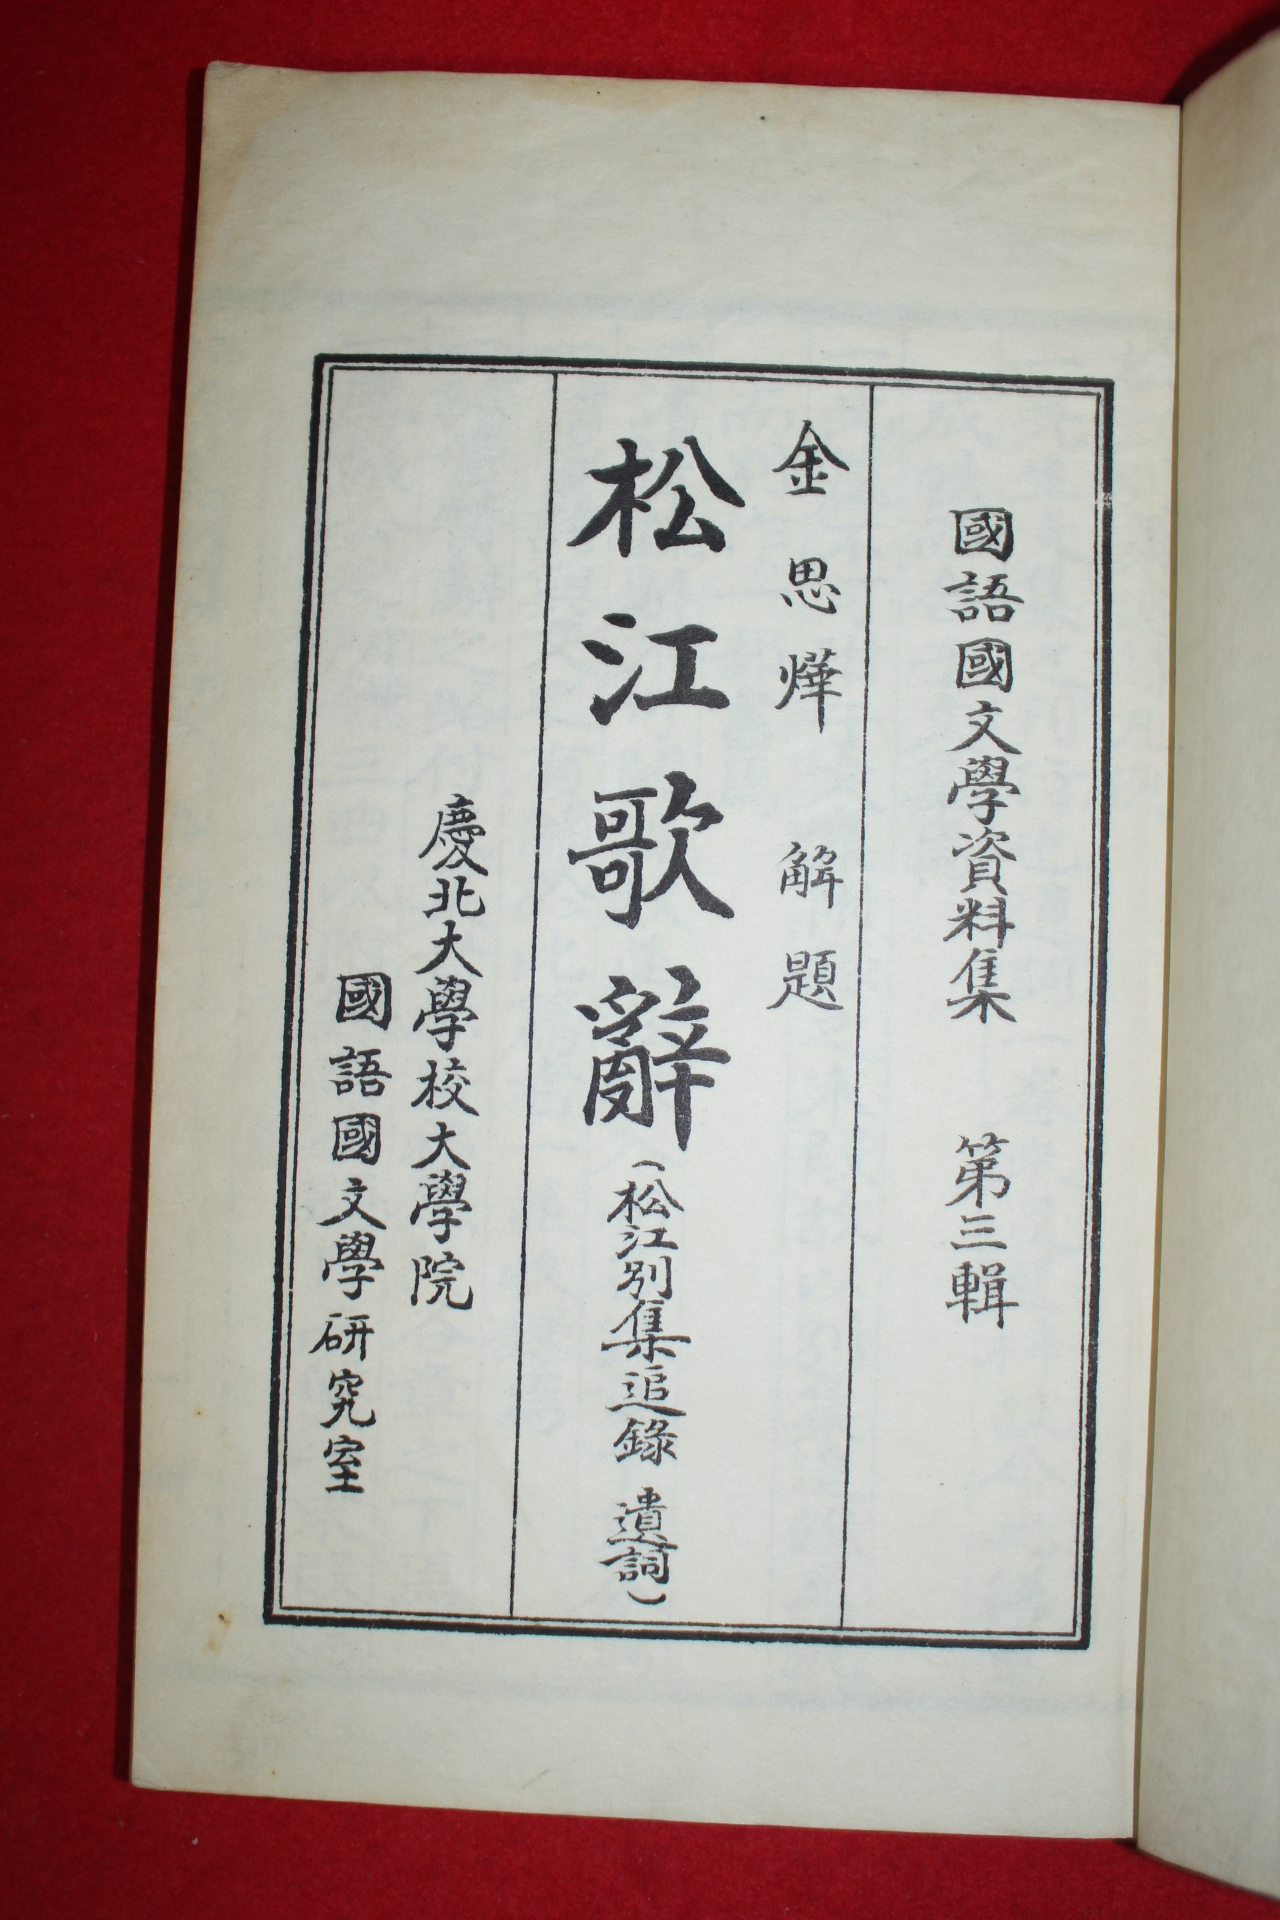 1958년 국어국문학연구실 송강가사(松江歌辭) 1책